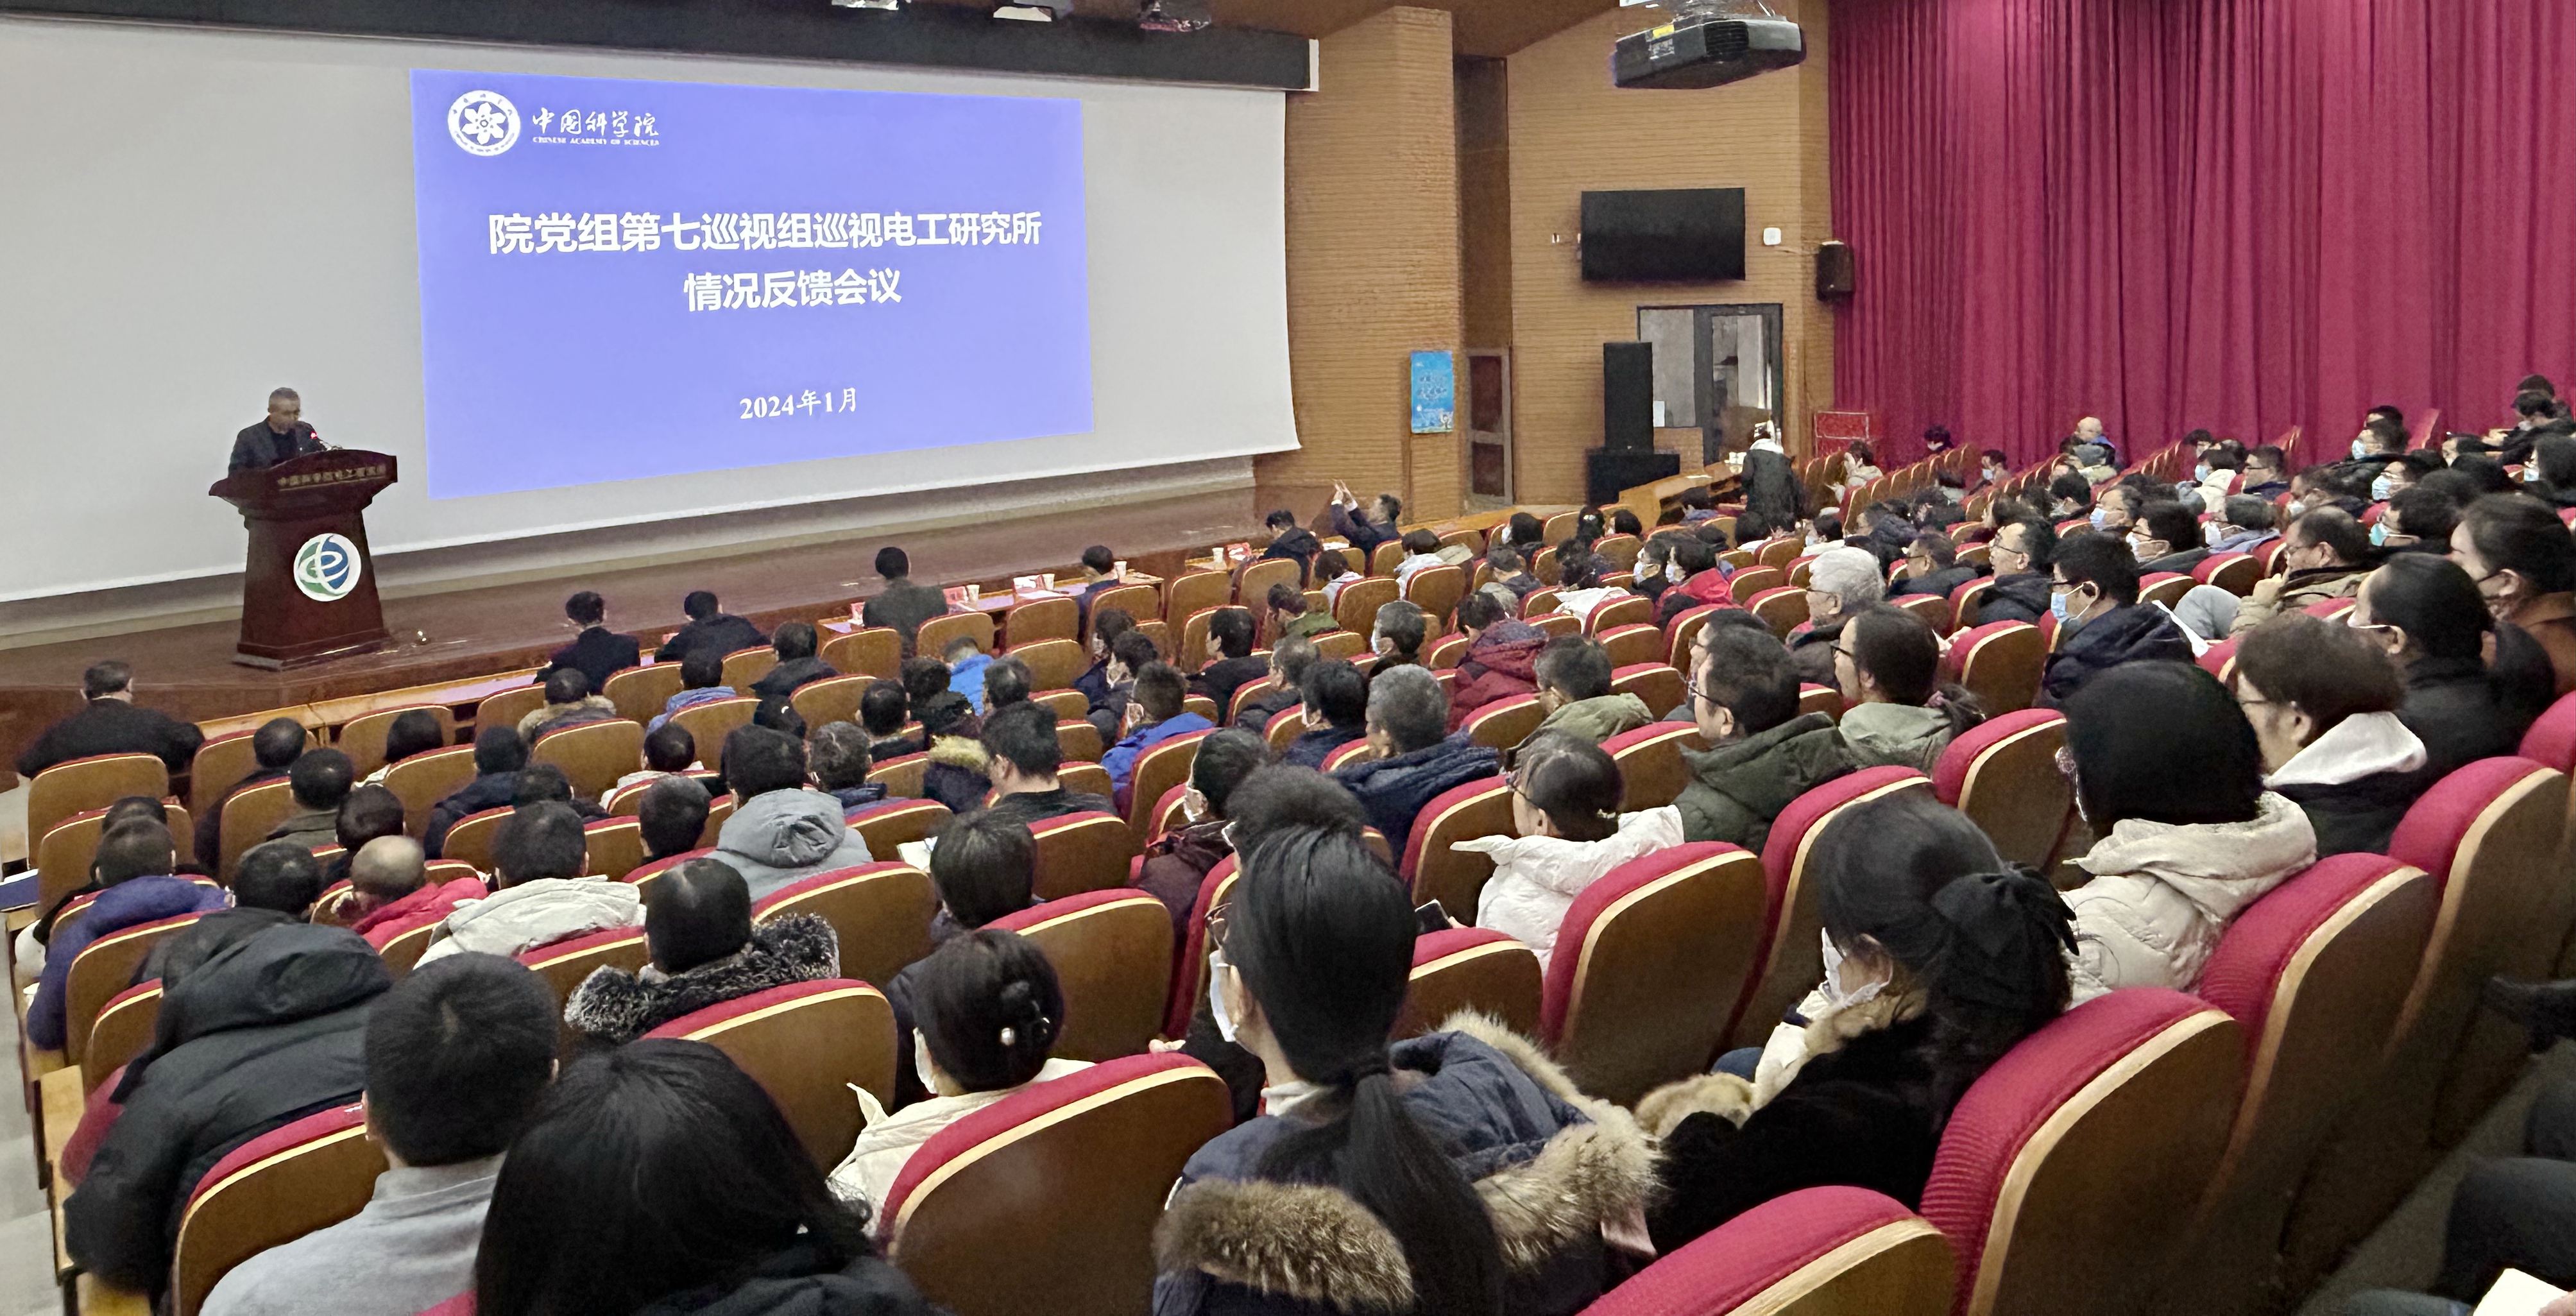 中国科学院党组第七巡视组向电工所反馈巡视情况